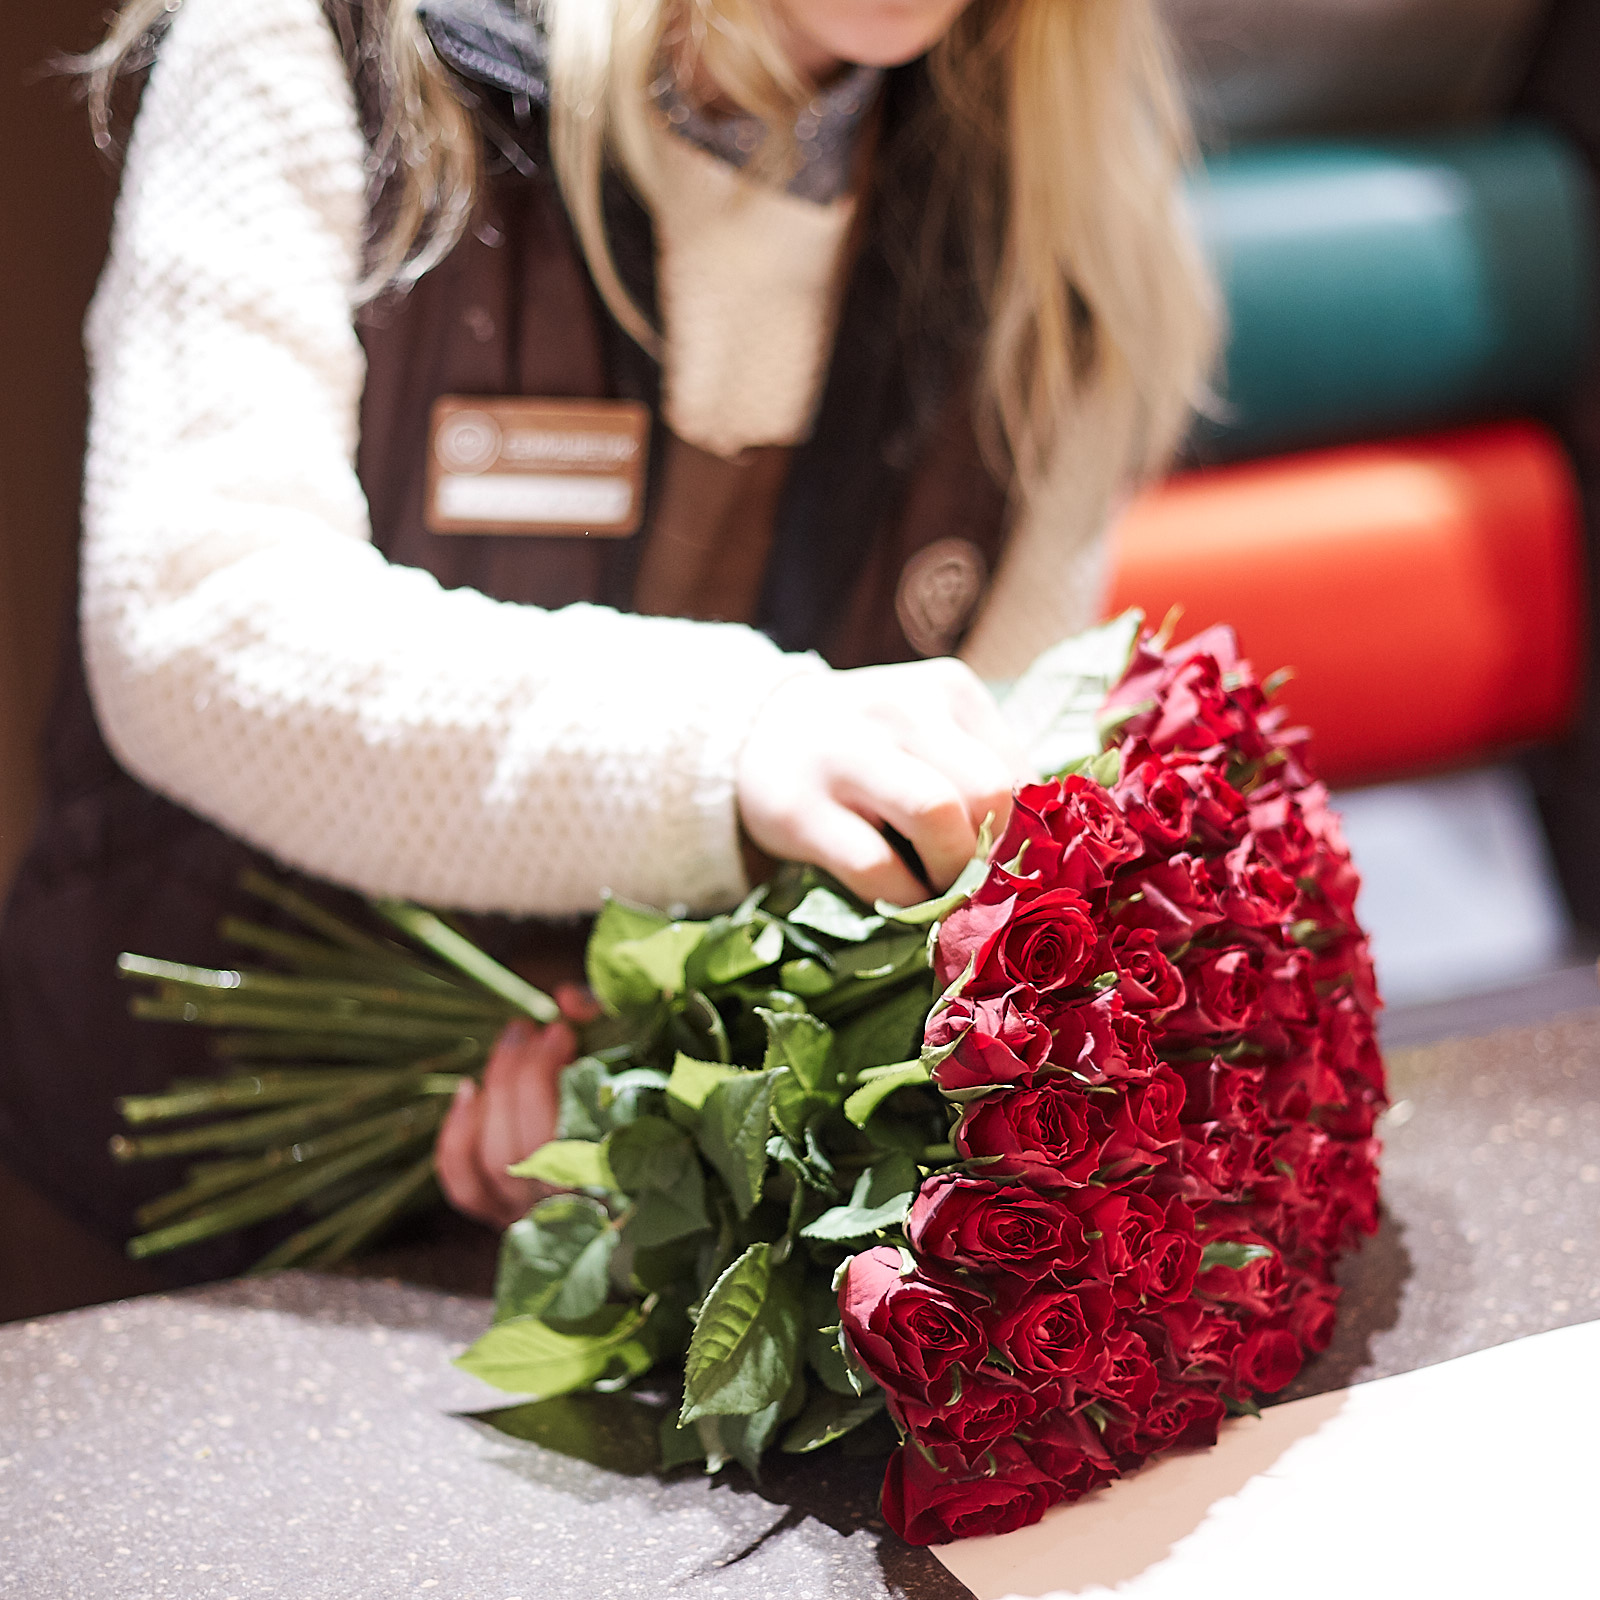 Человек с букетом цветов. Флорист с букетом. Красивый букет в руках. Фотосессия с букетом роз. Букет в руках у девушки.